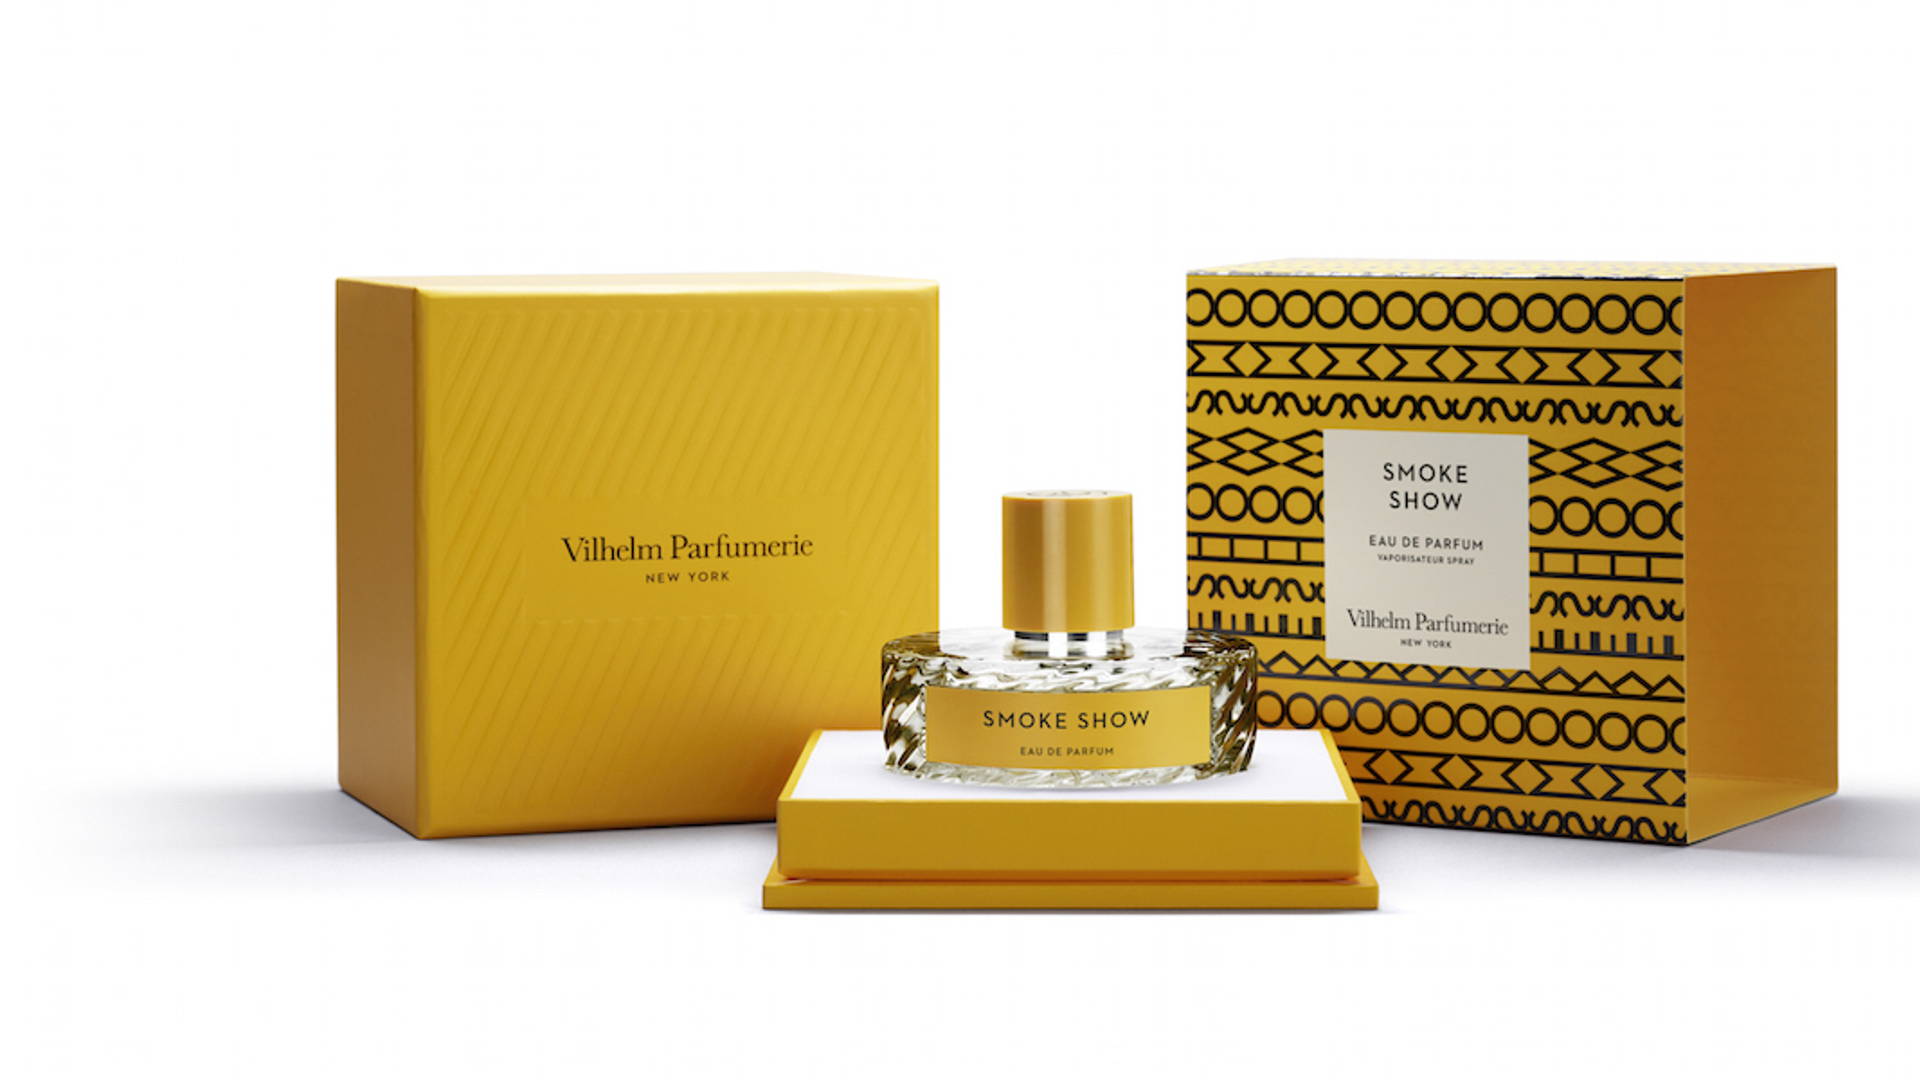 Vilhelm Parfumerie | Dieline - Design, Branding & Packaging Inspiration